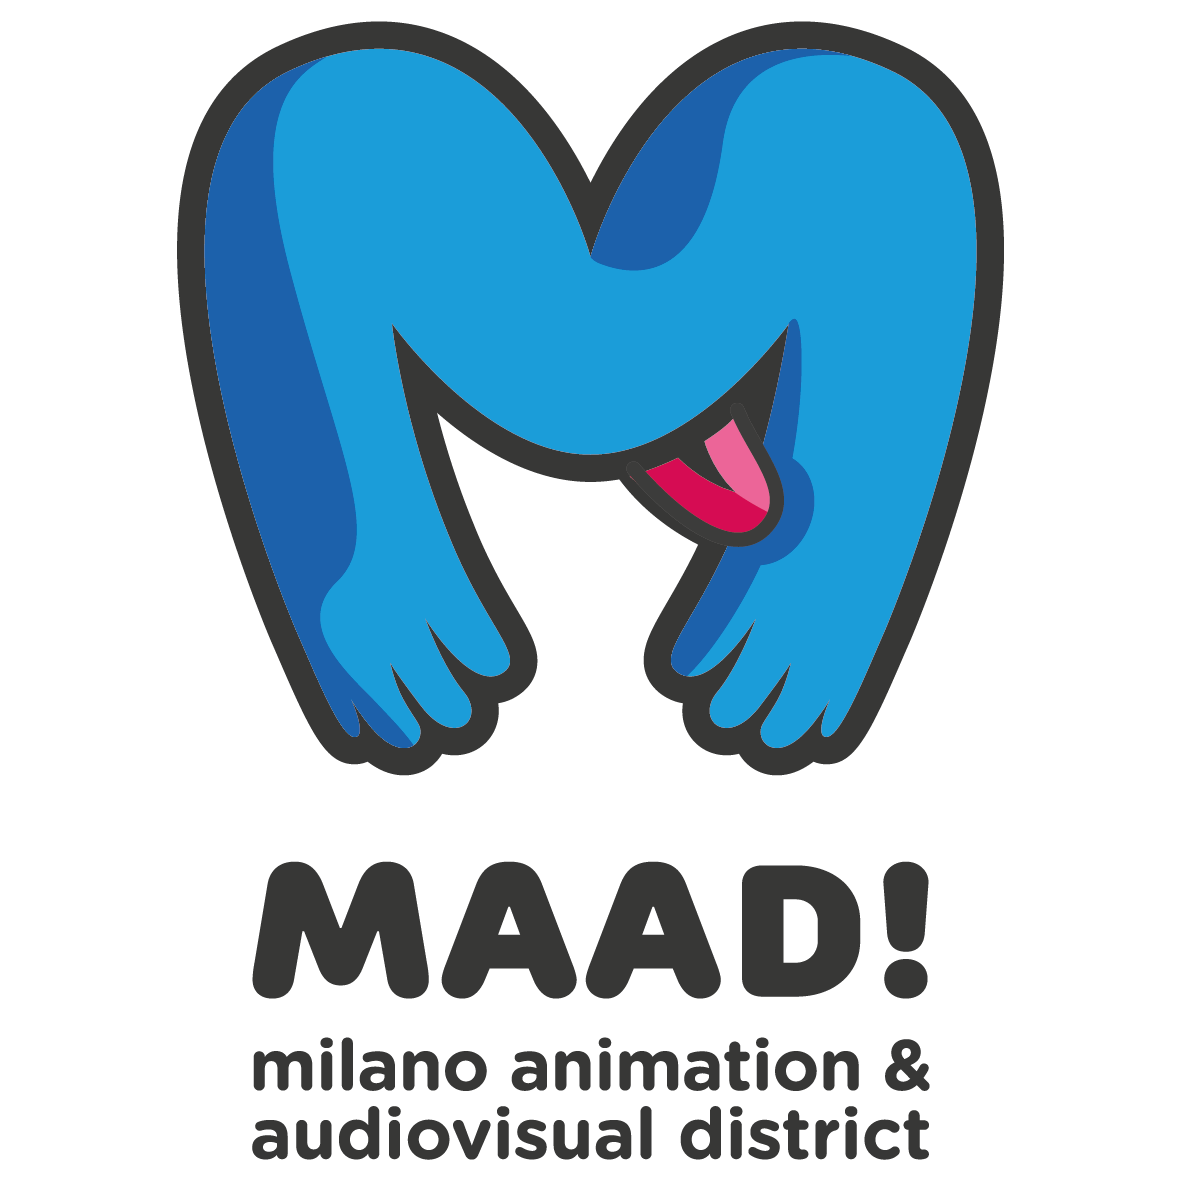 Dal 27 al 29 settembre MaadDays, l’appuntamento nazionale dell’audiovisivo e dell’animazione